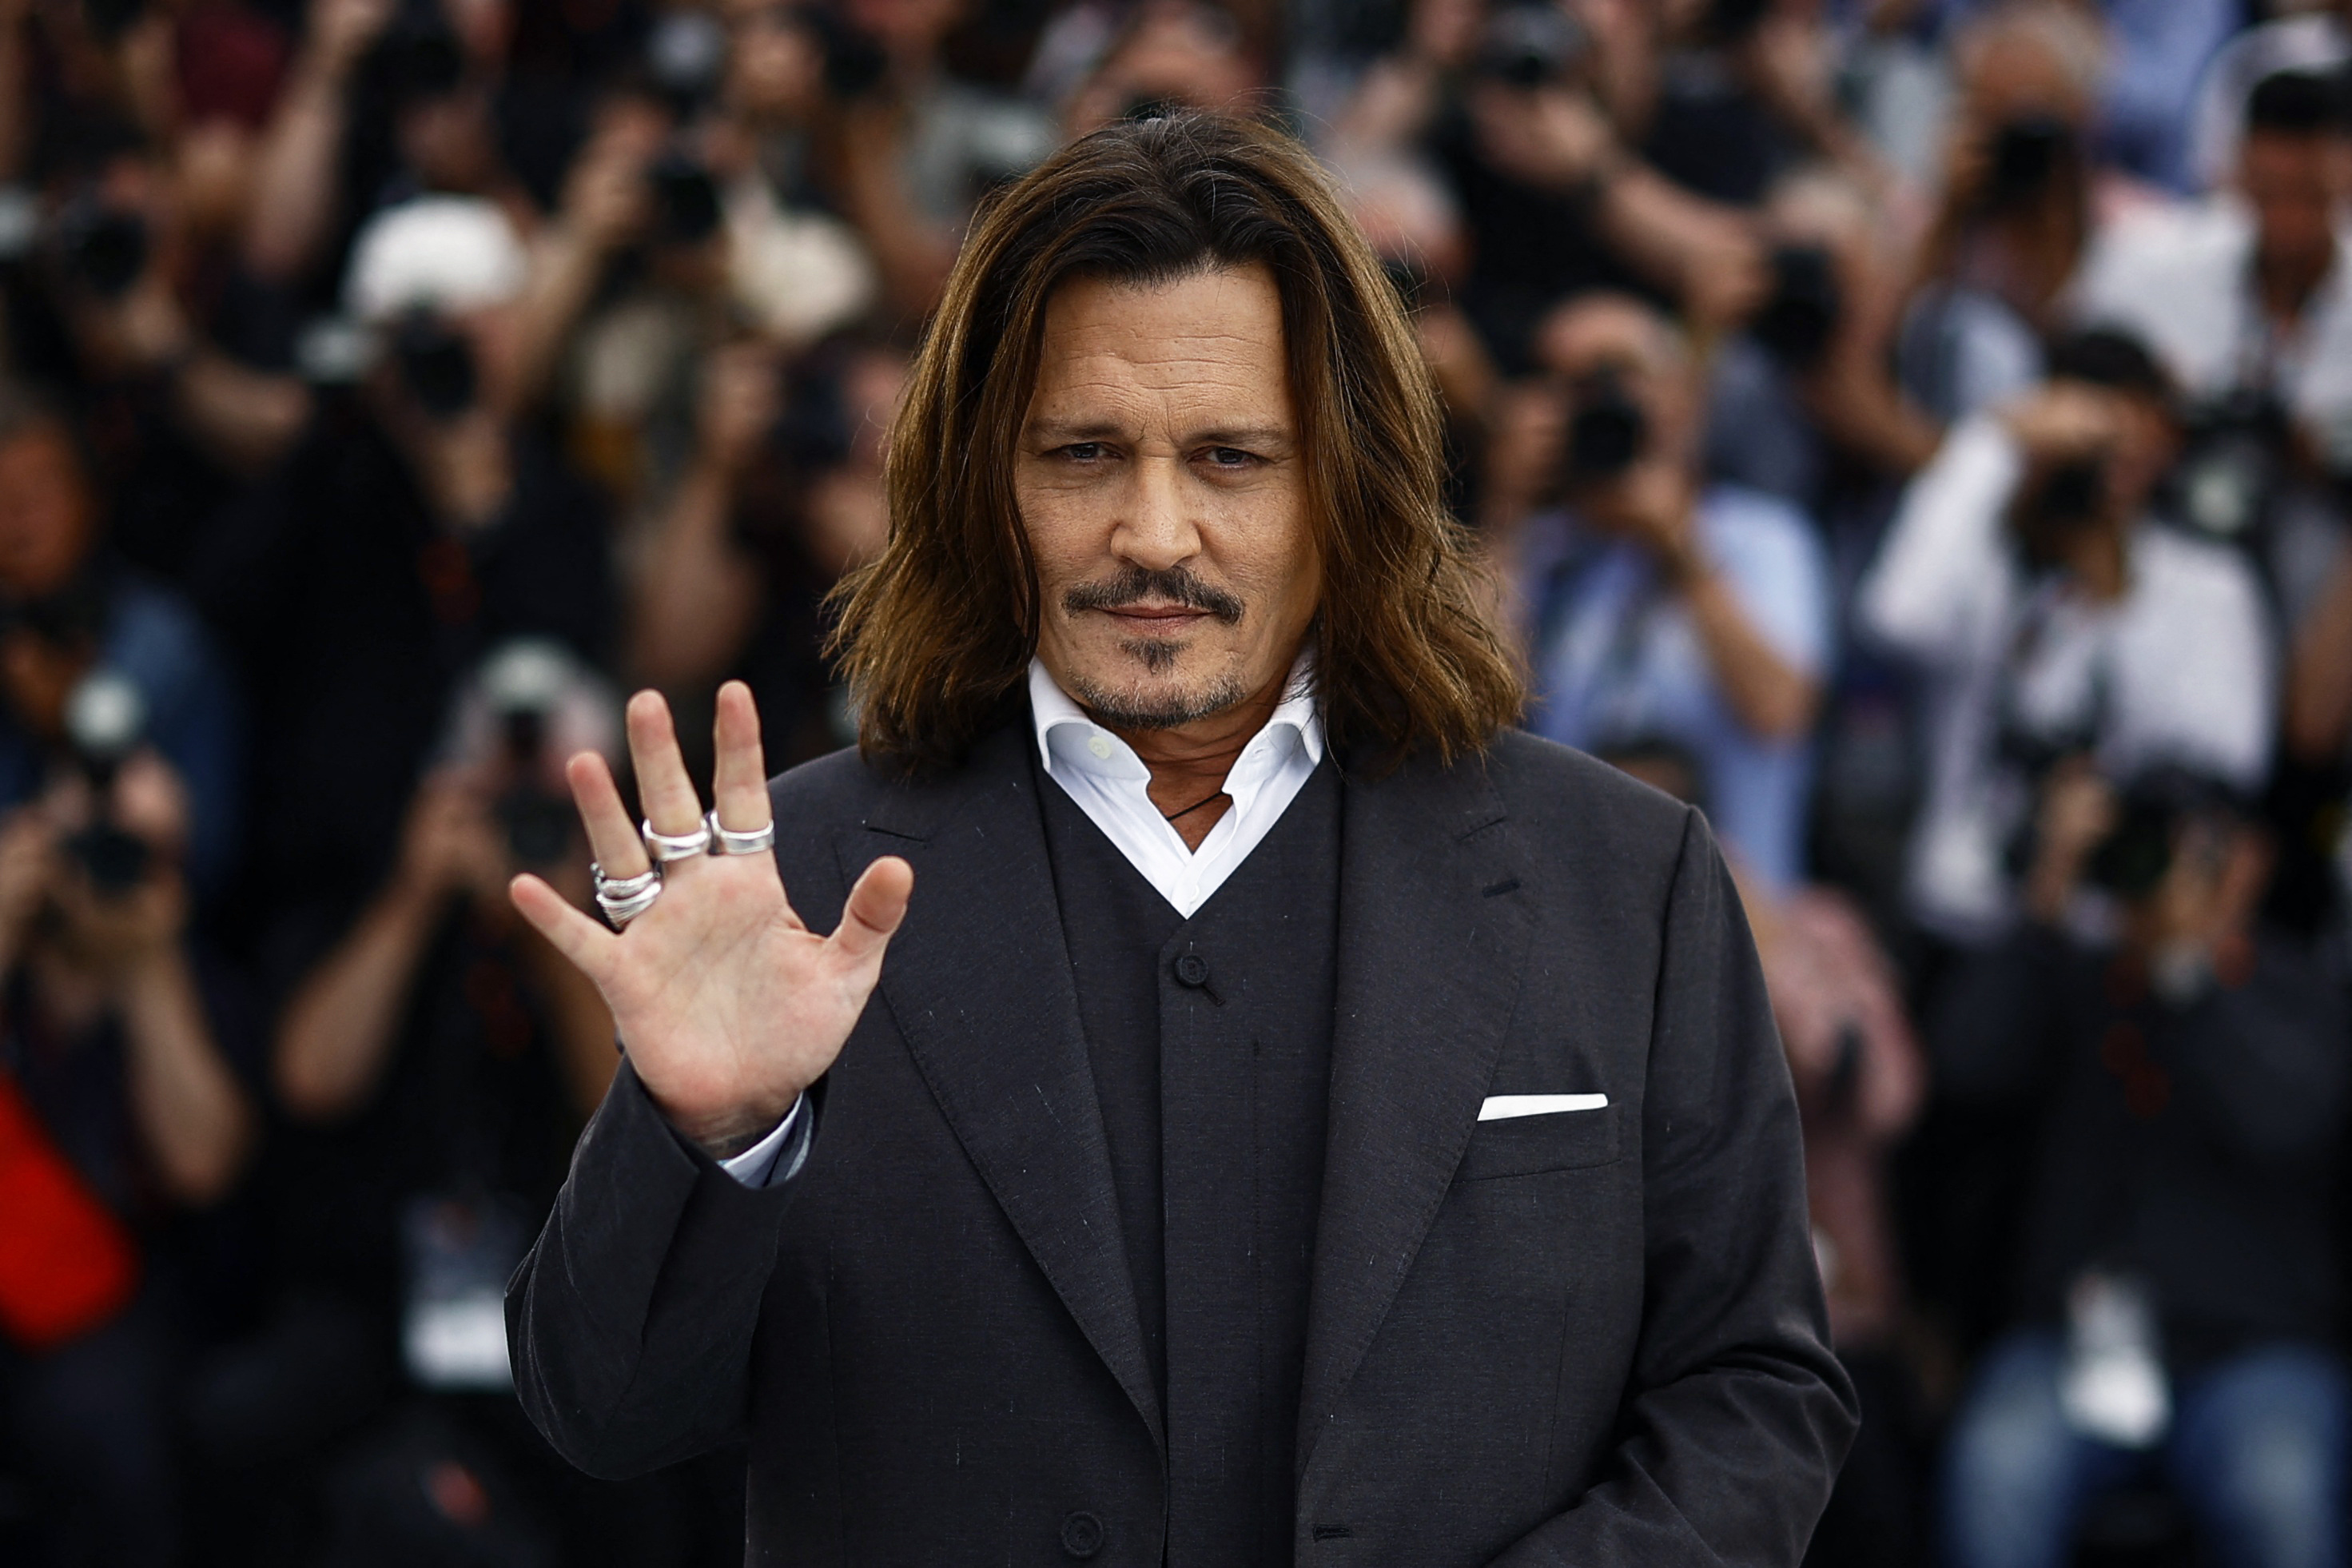 Johnny Depp tendría pensado dirigir ese dinero a cinco organizaciones benéficas
REUTERS/Sarah Meyssonnier